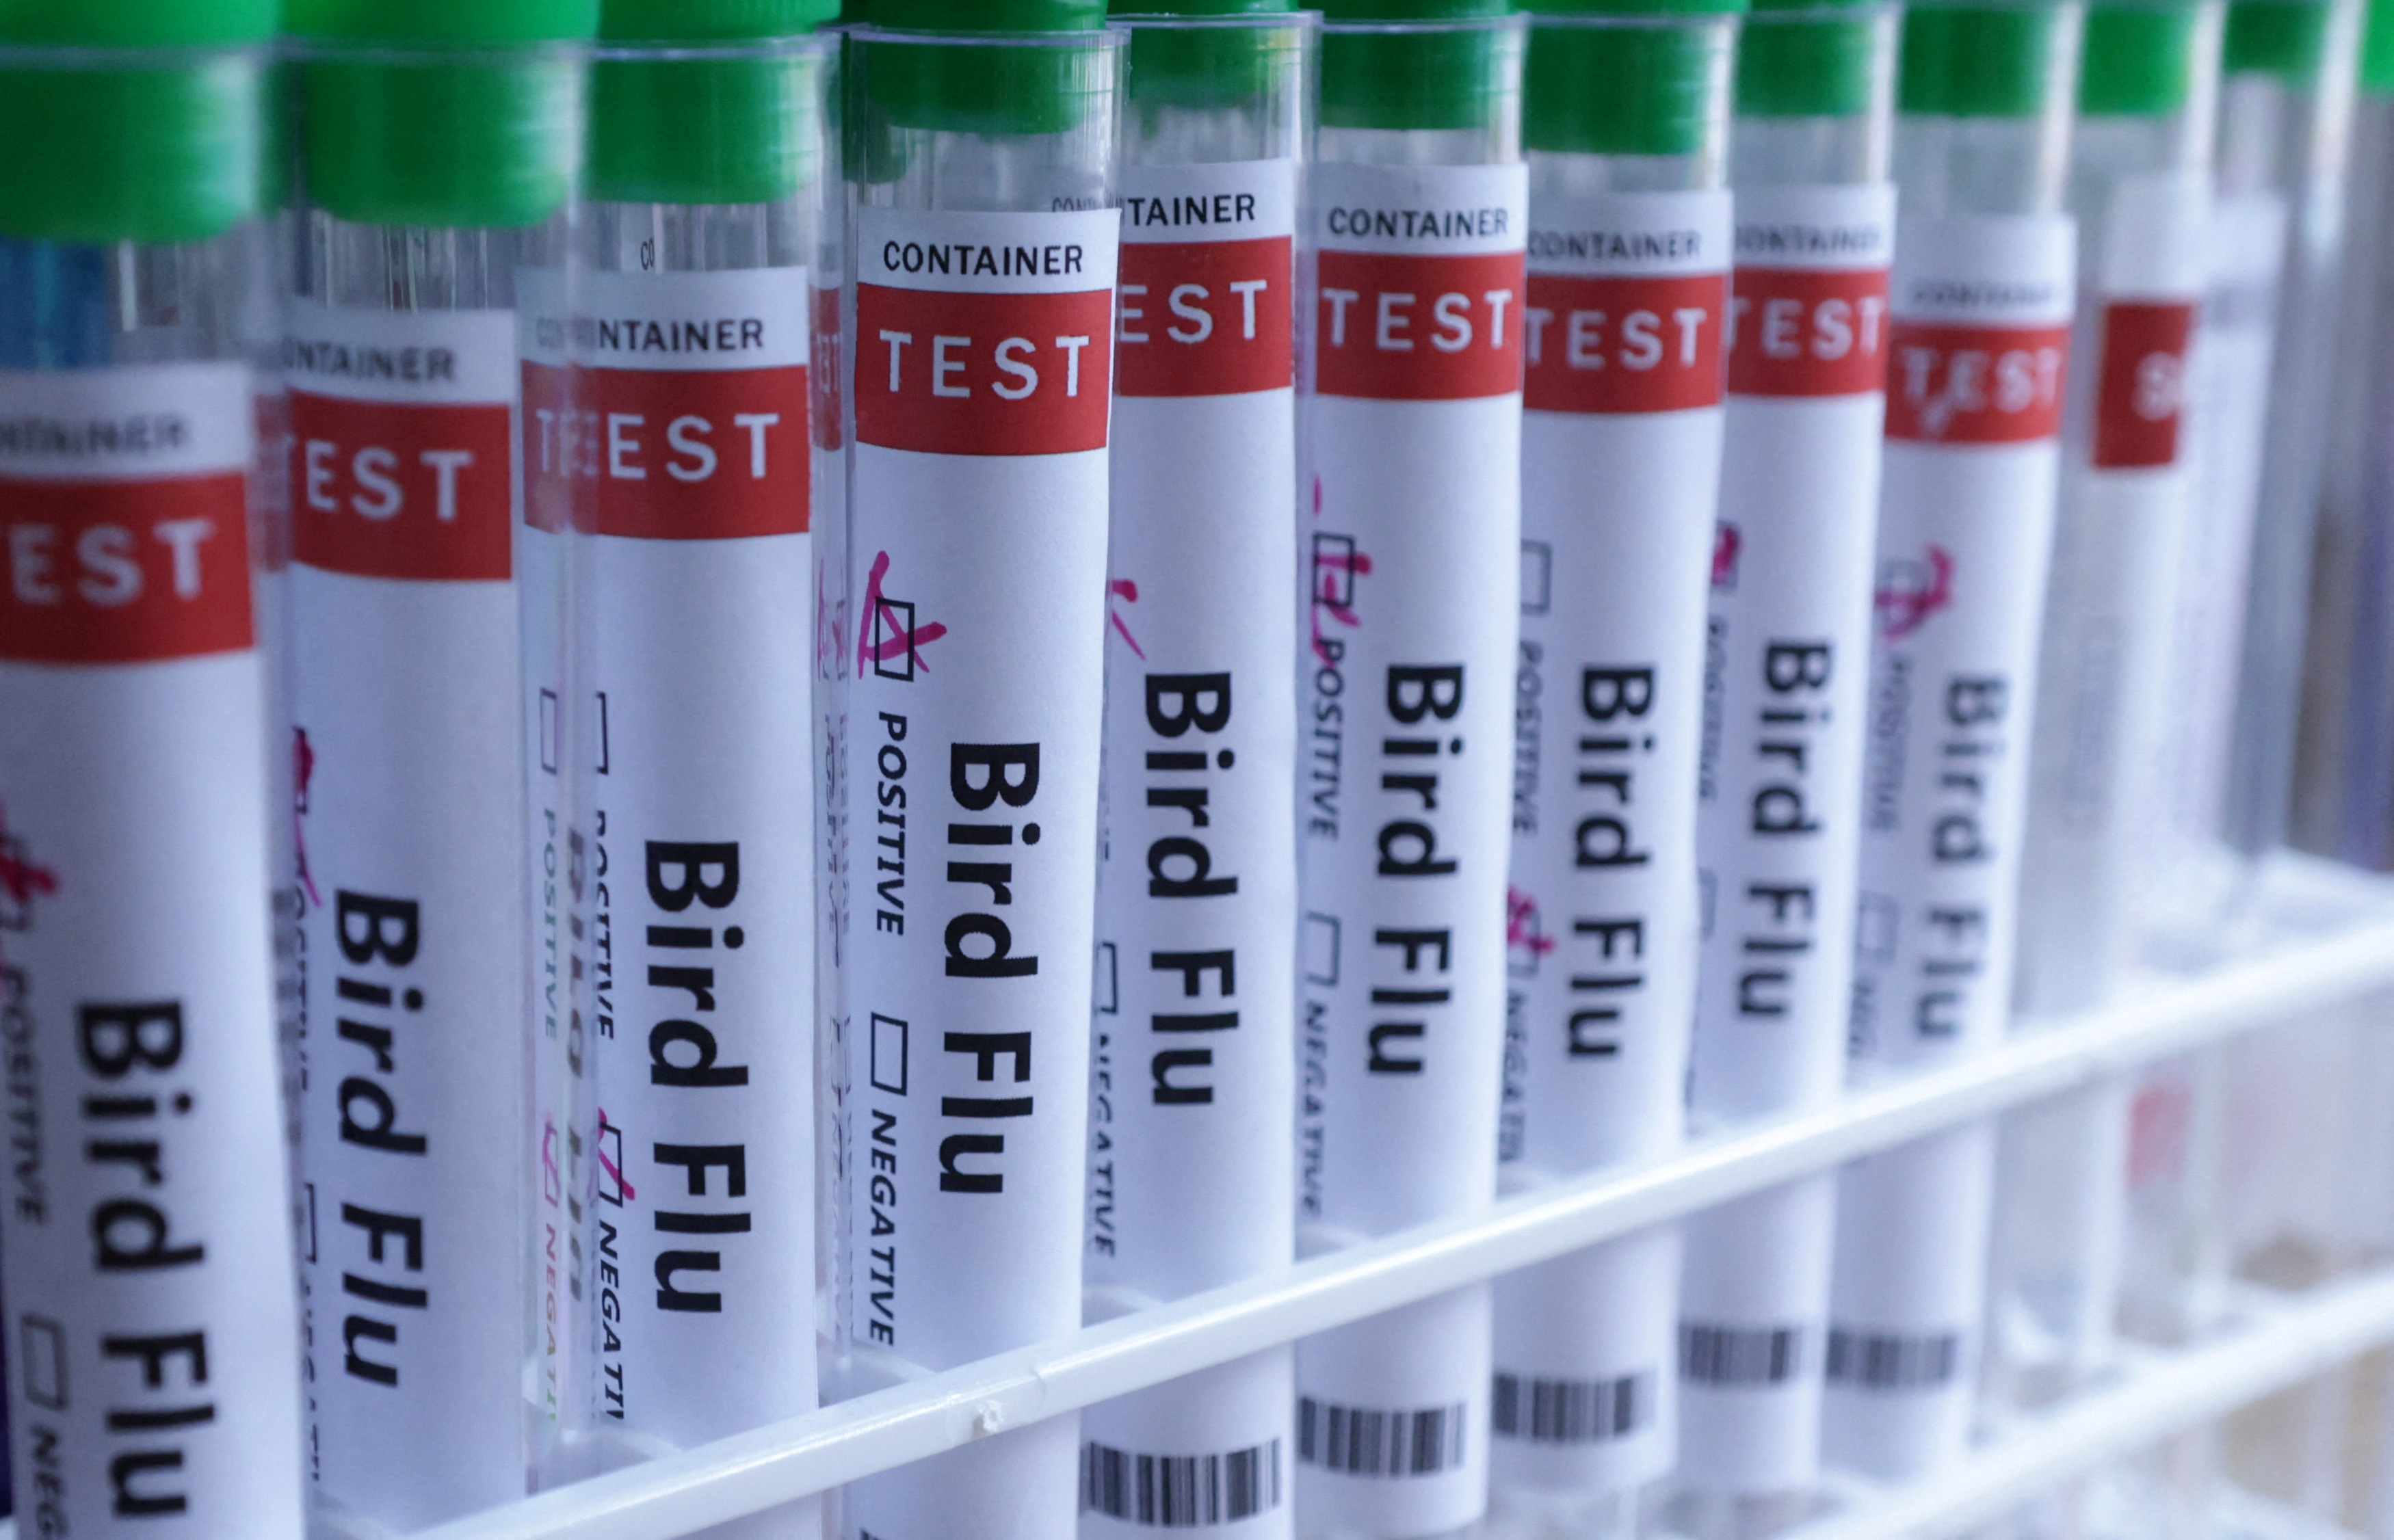 Illustration shows test tubes labelled "Bird Flu" words